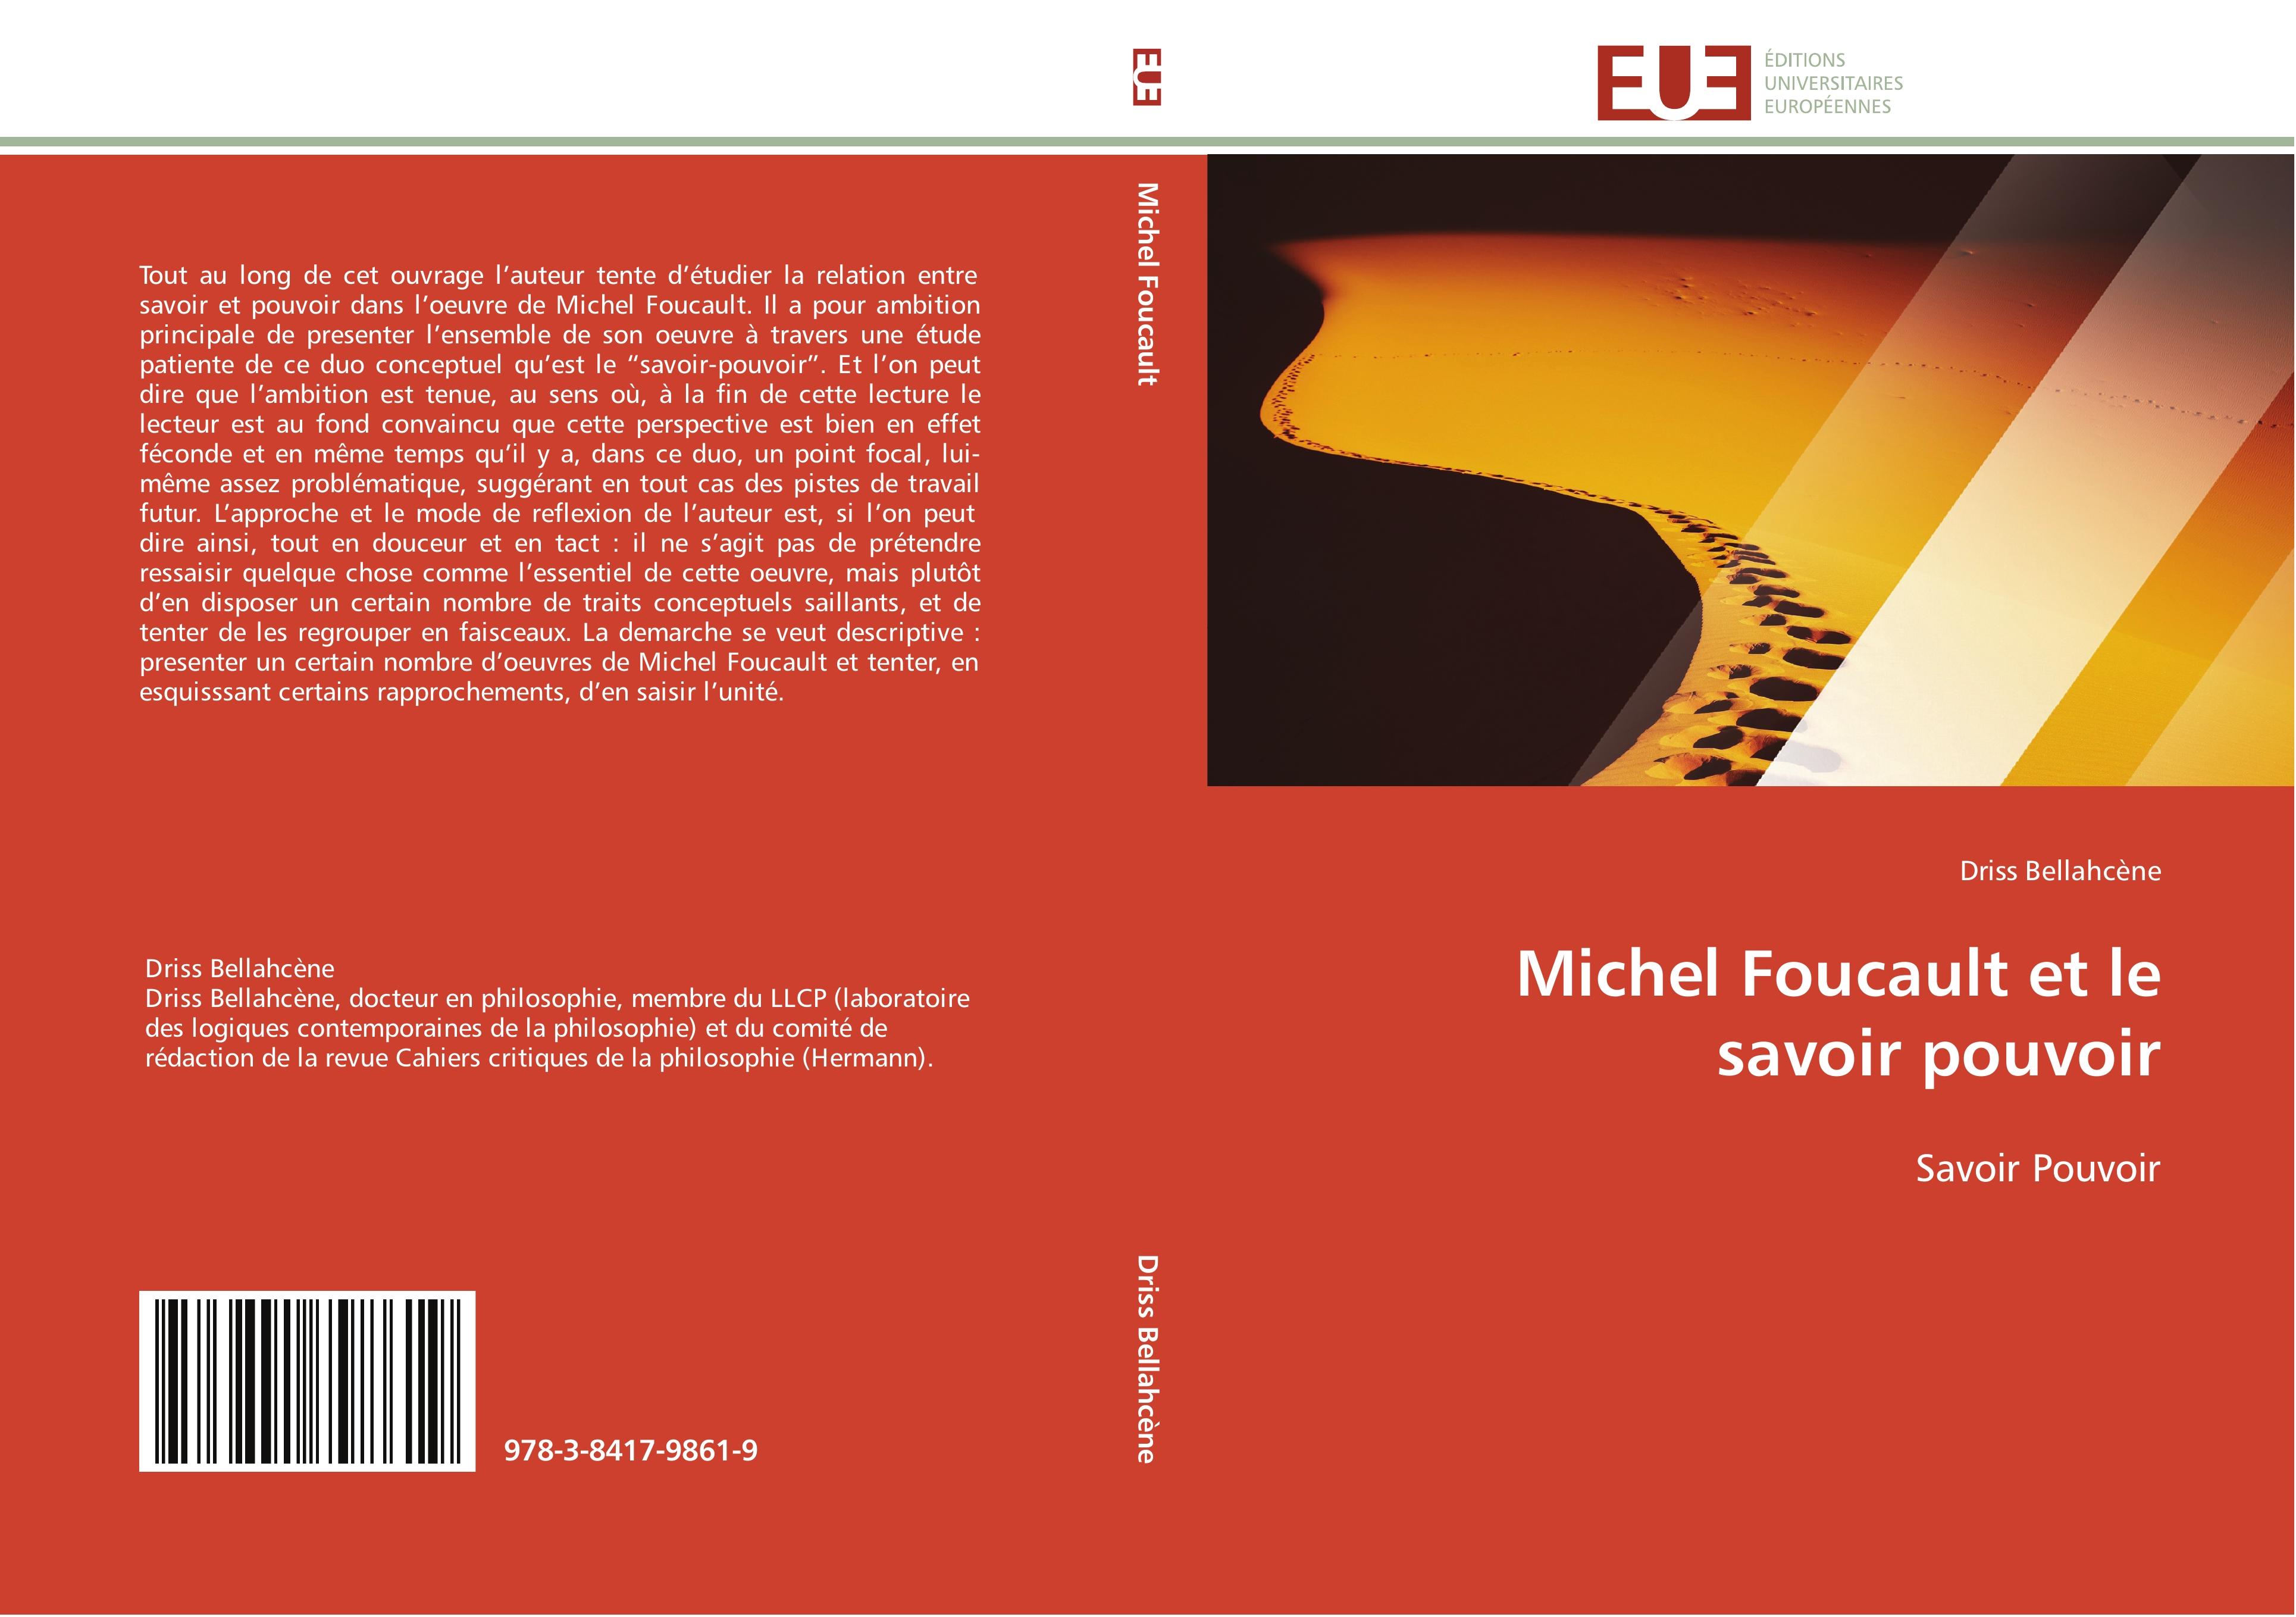 Michel Foucault et le savoir pouvoir - Driss Bellahcène